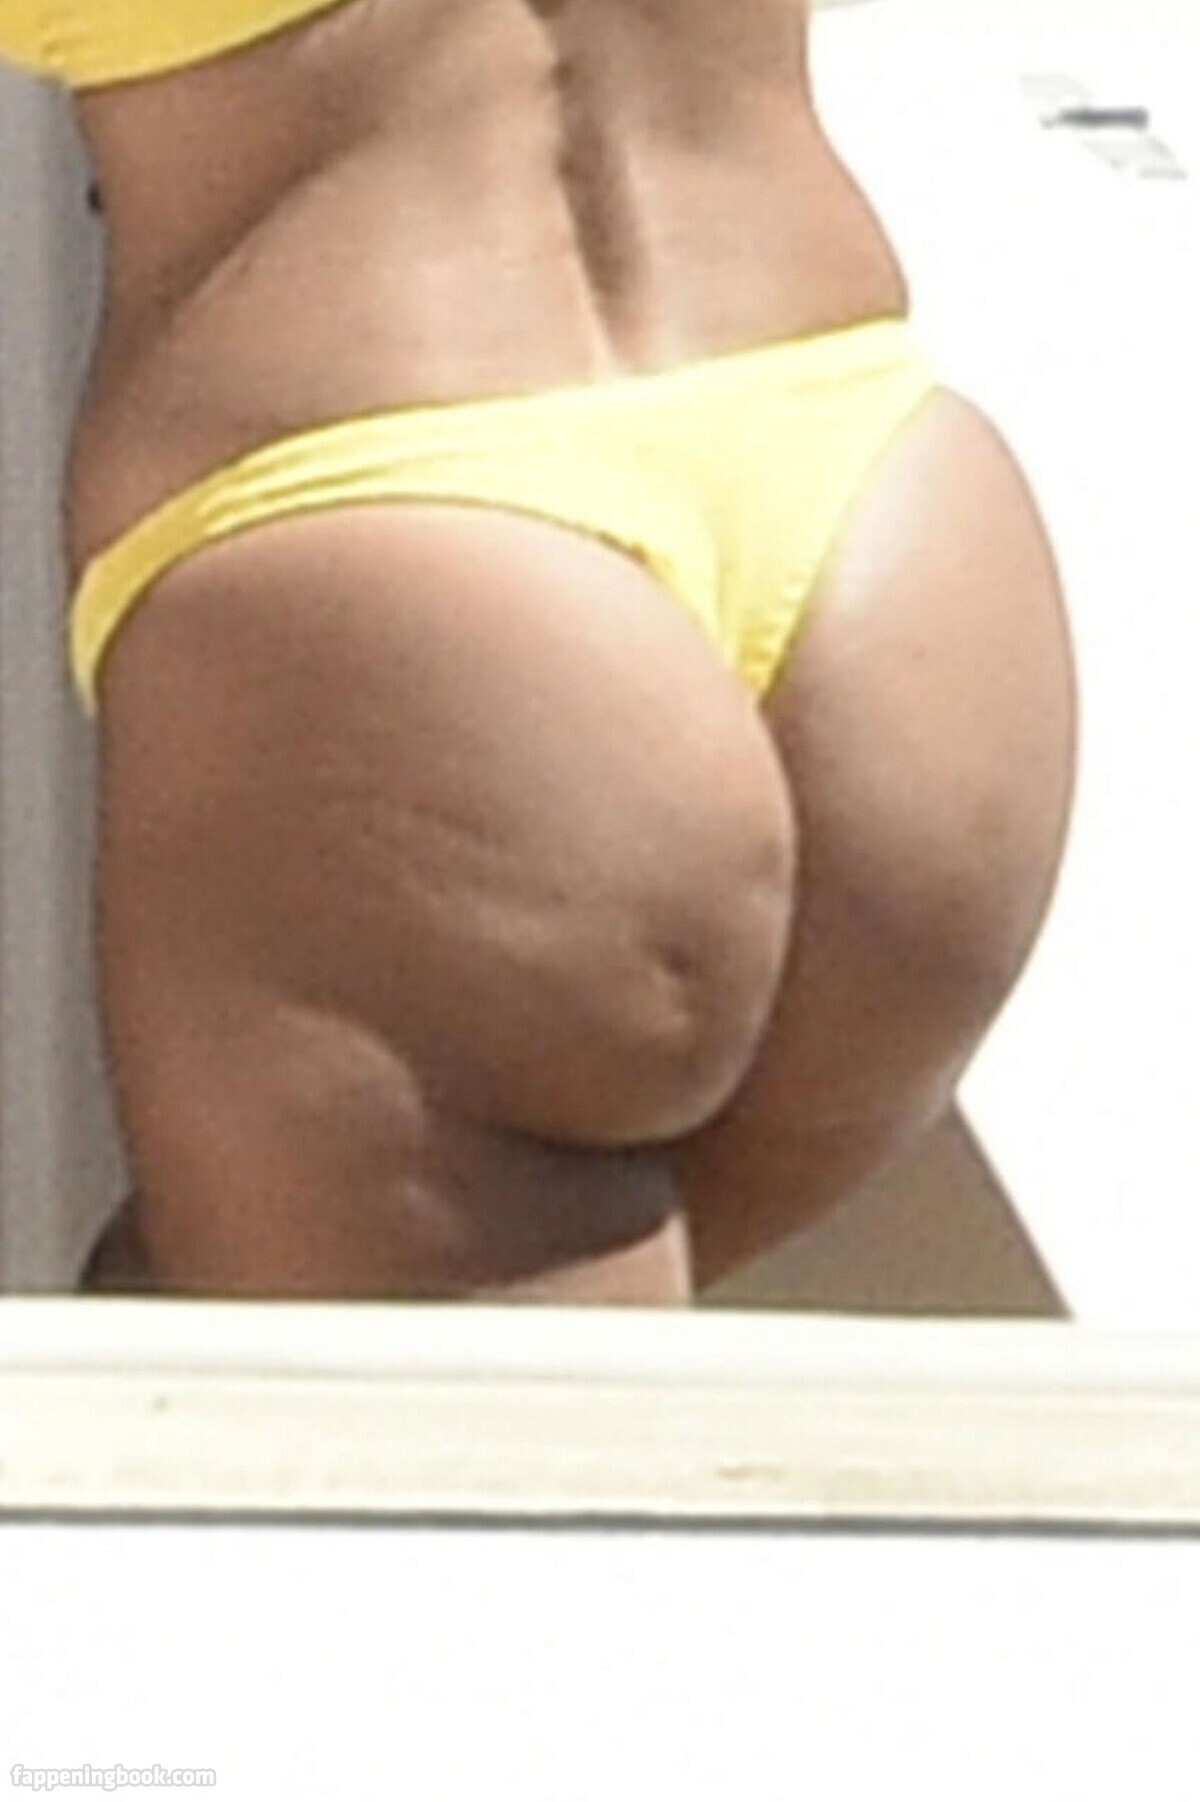 Kourtney Kardashian Nude